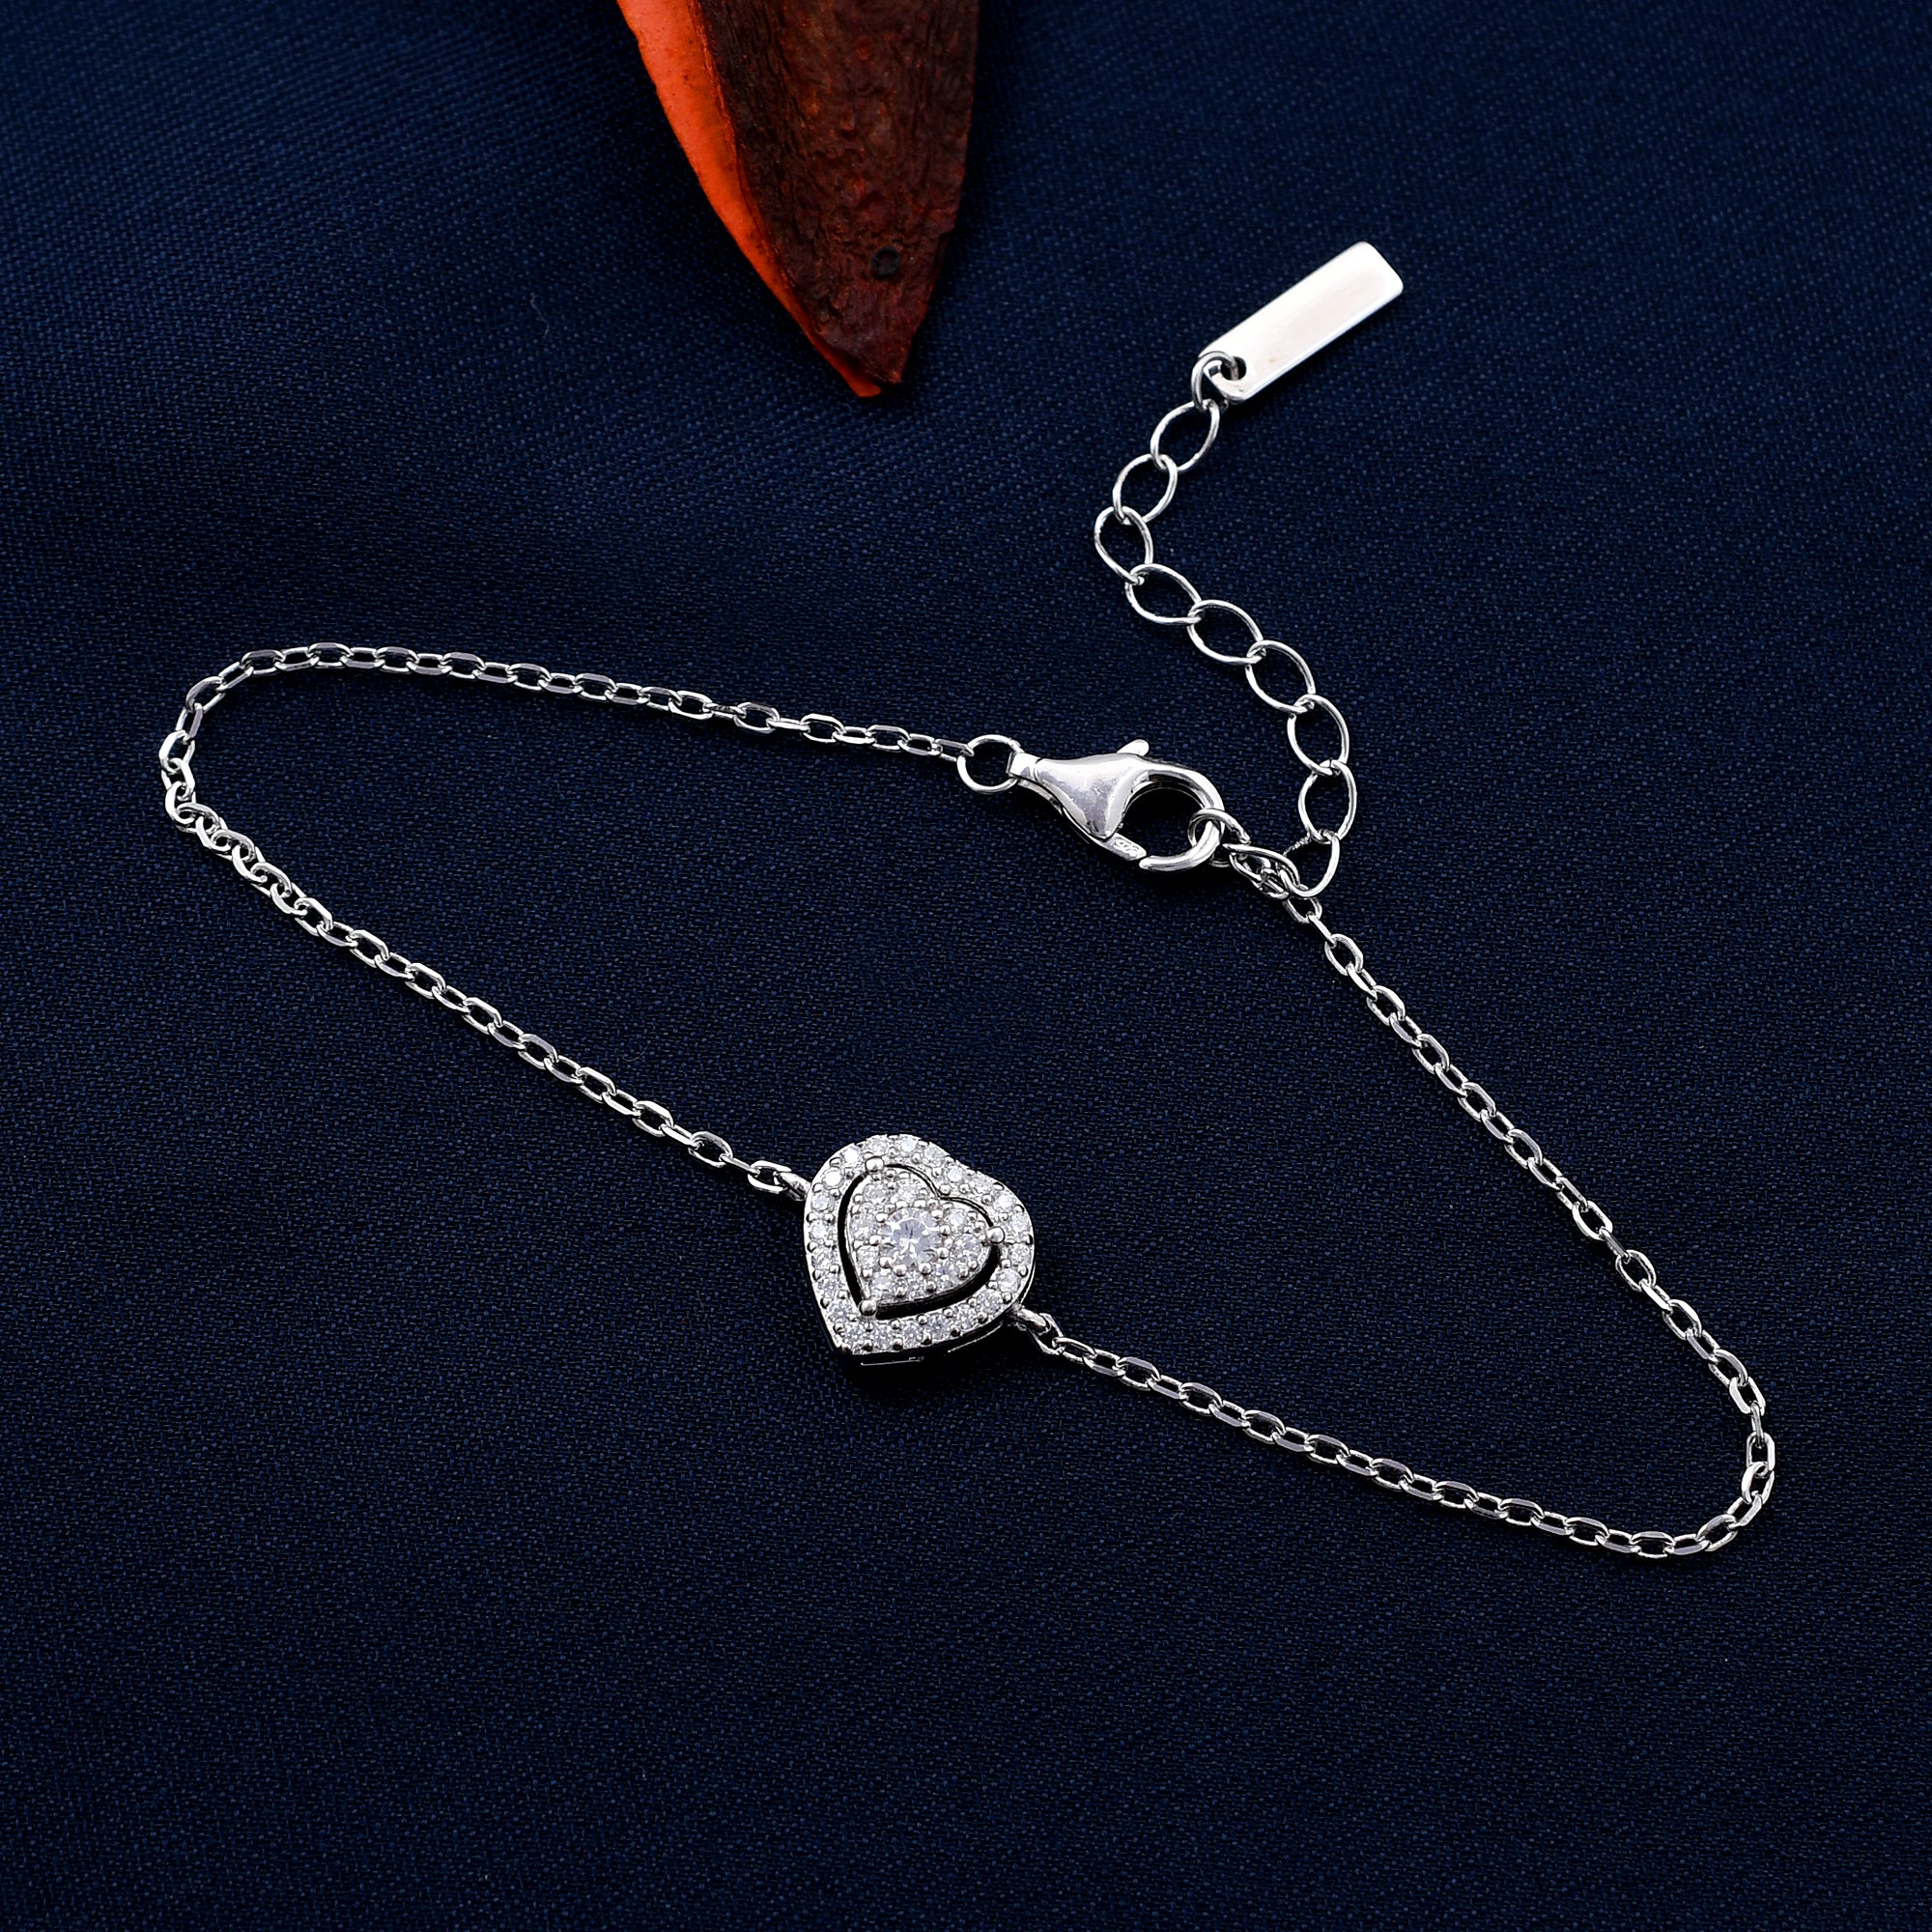 Sparkly Heart Design 925 Sterling Silver Bracelet